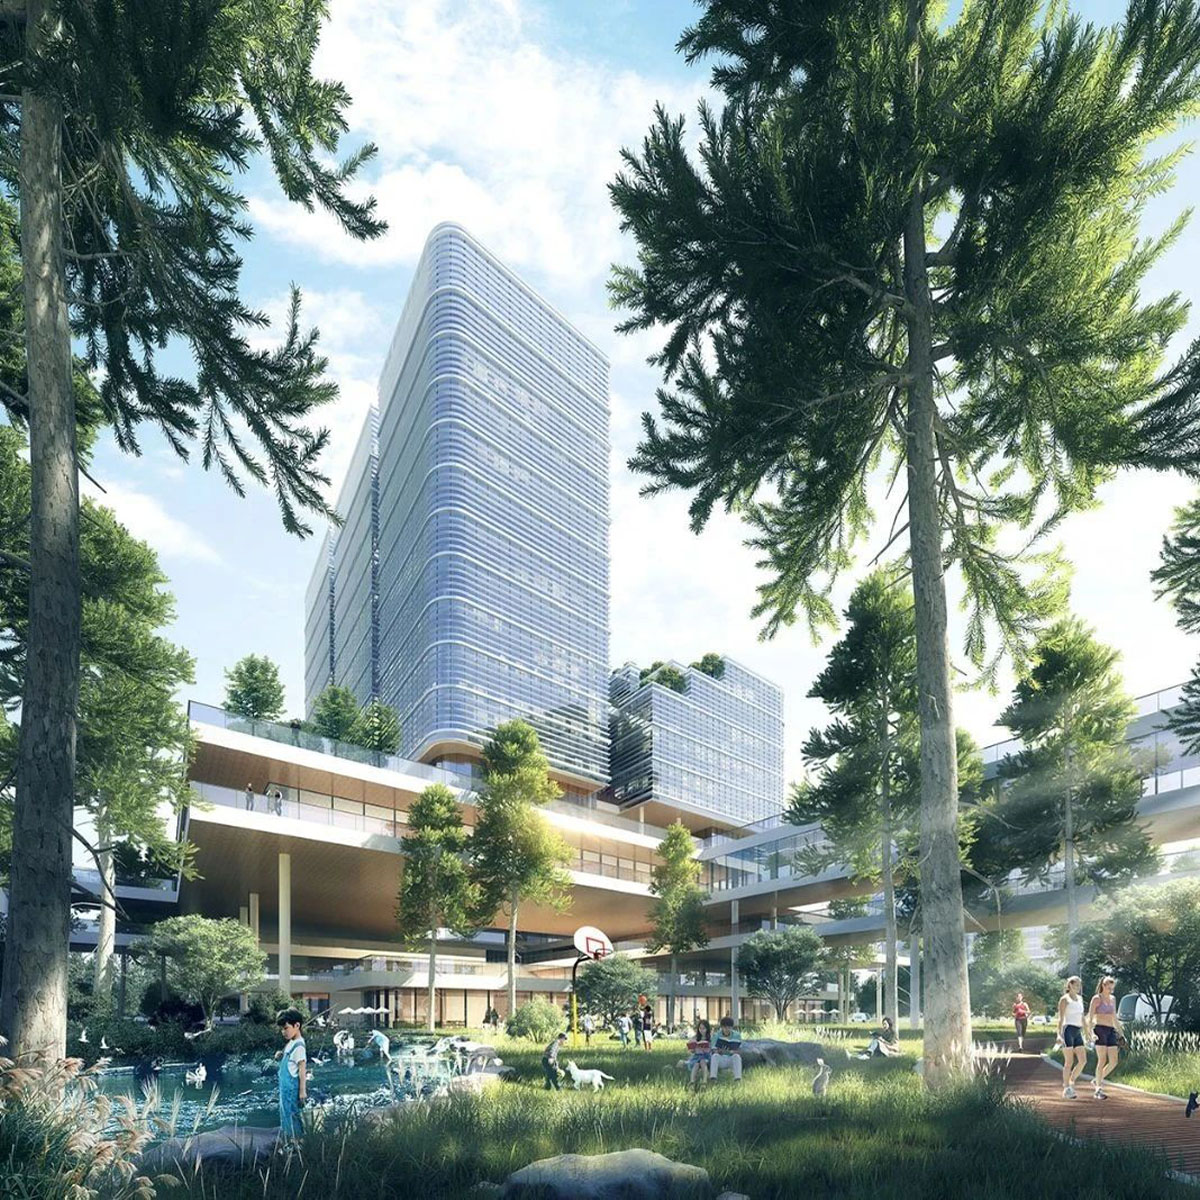 赢得重庆礼嘉智慧公园创新中心西区国际竞赛 | 栖城设计